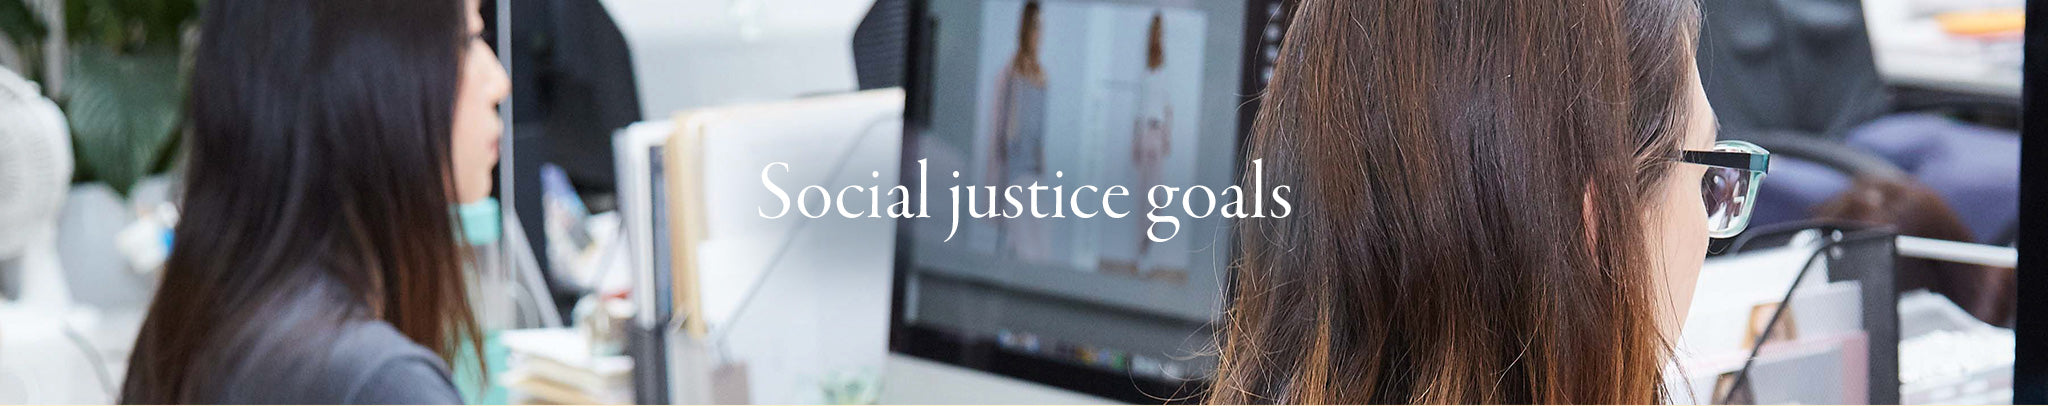 Social justice goals